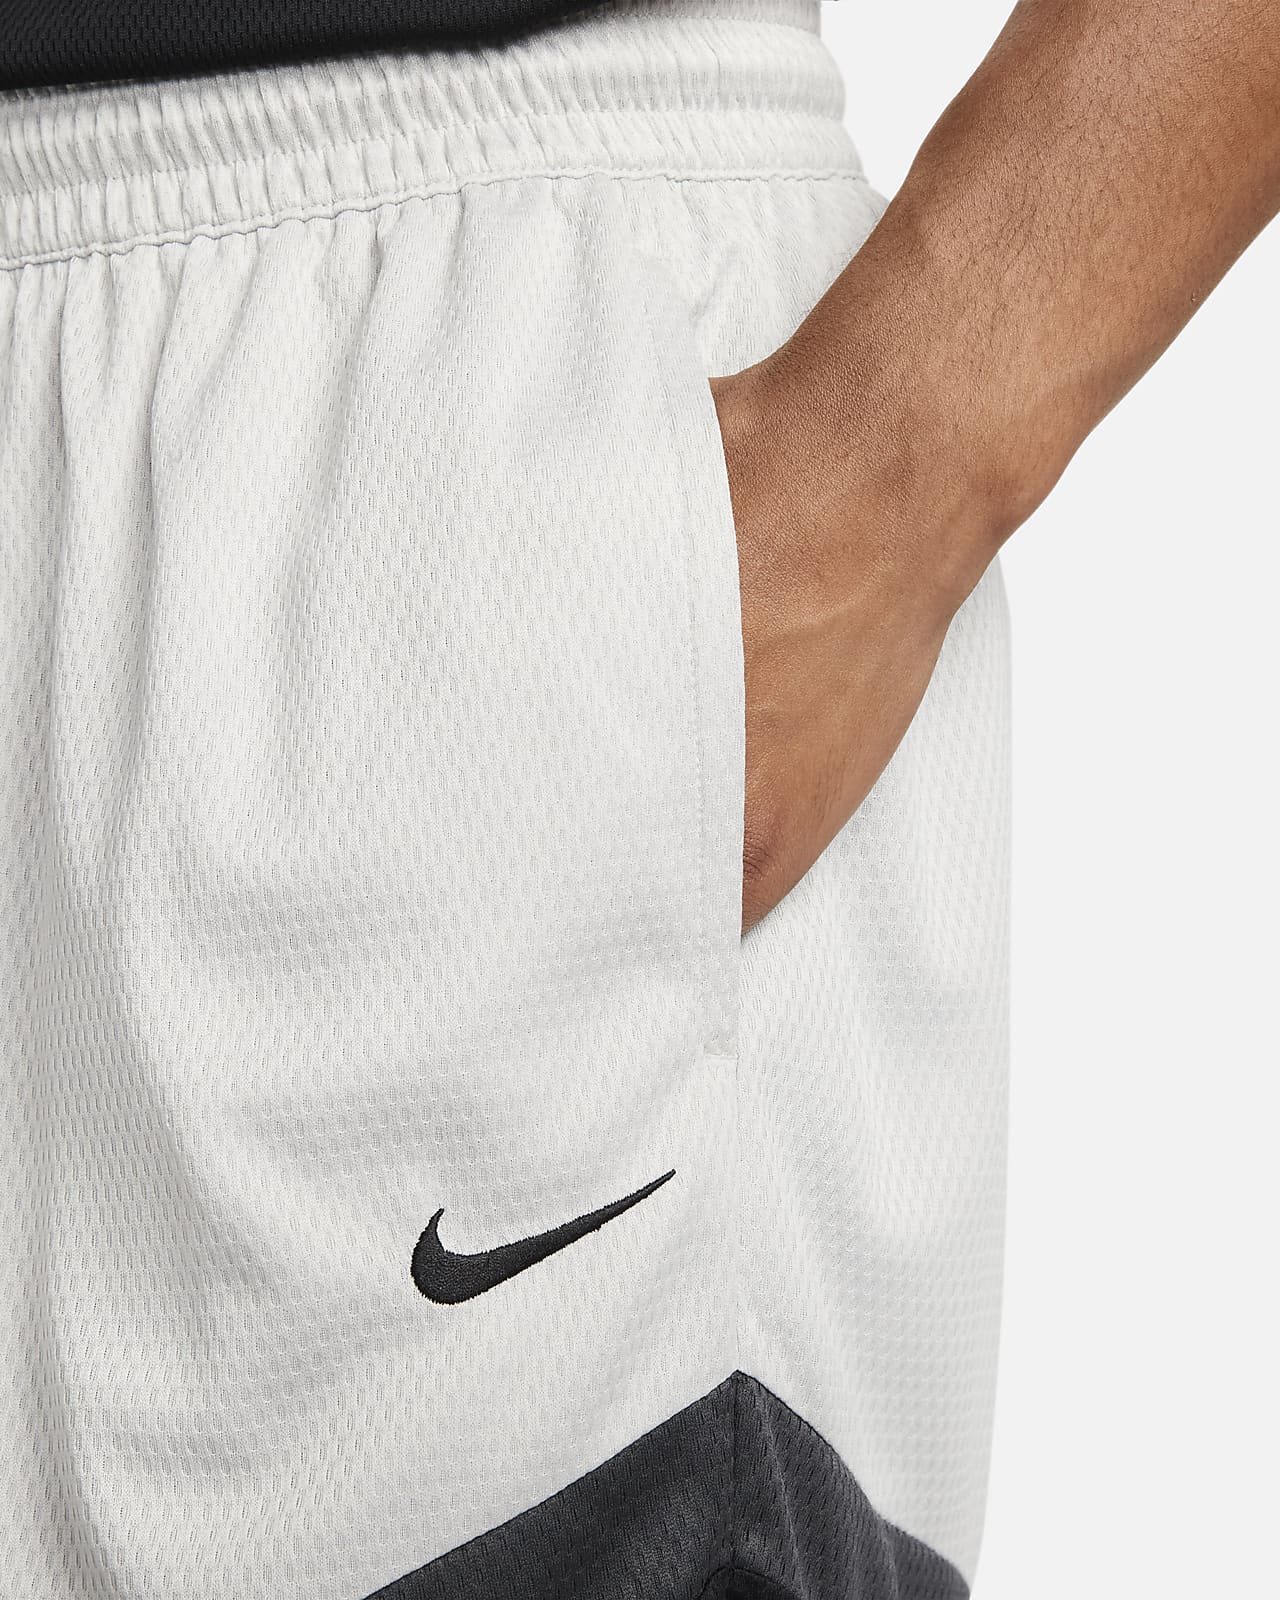 Nike Dri-FIT Men's 8 Graphic Baseball Shorts